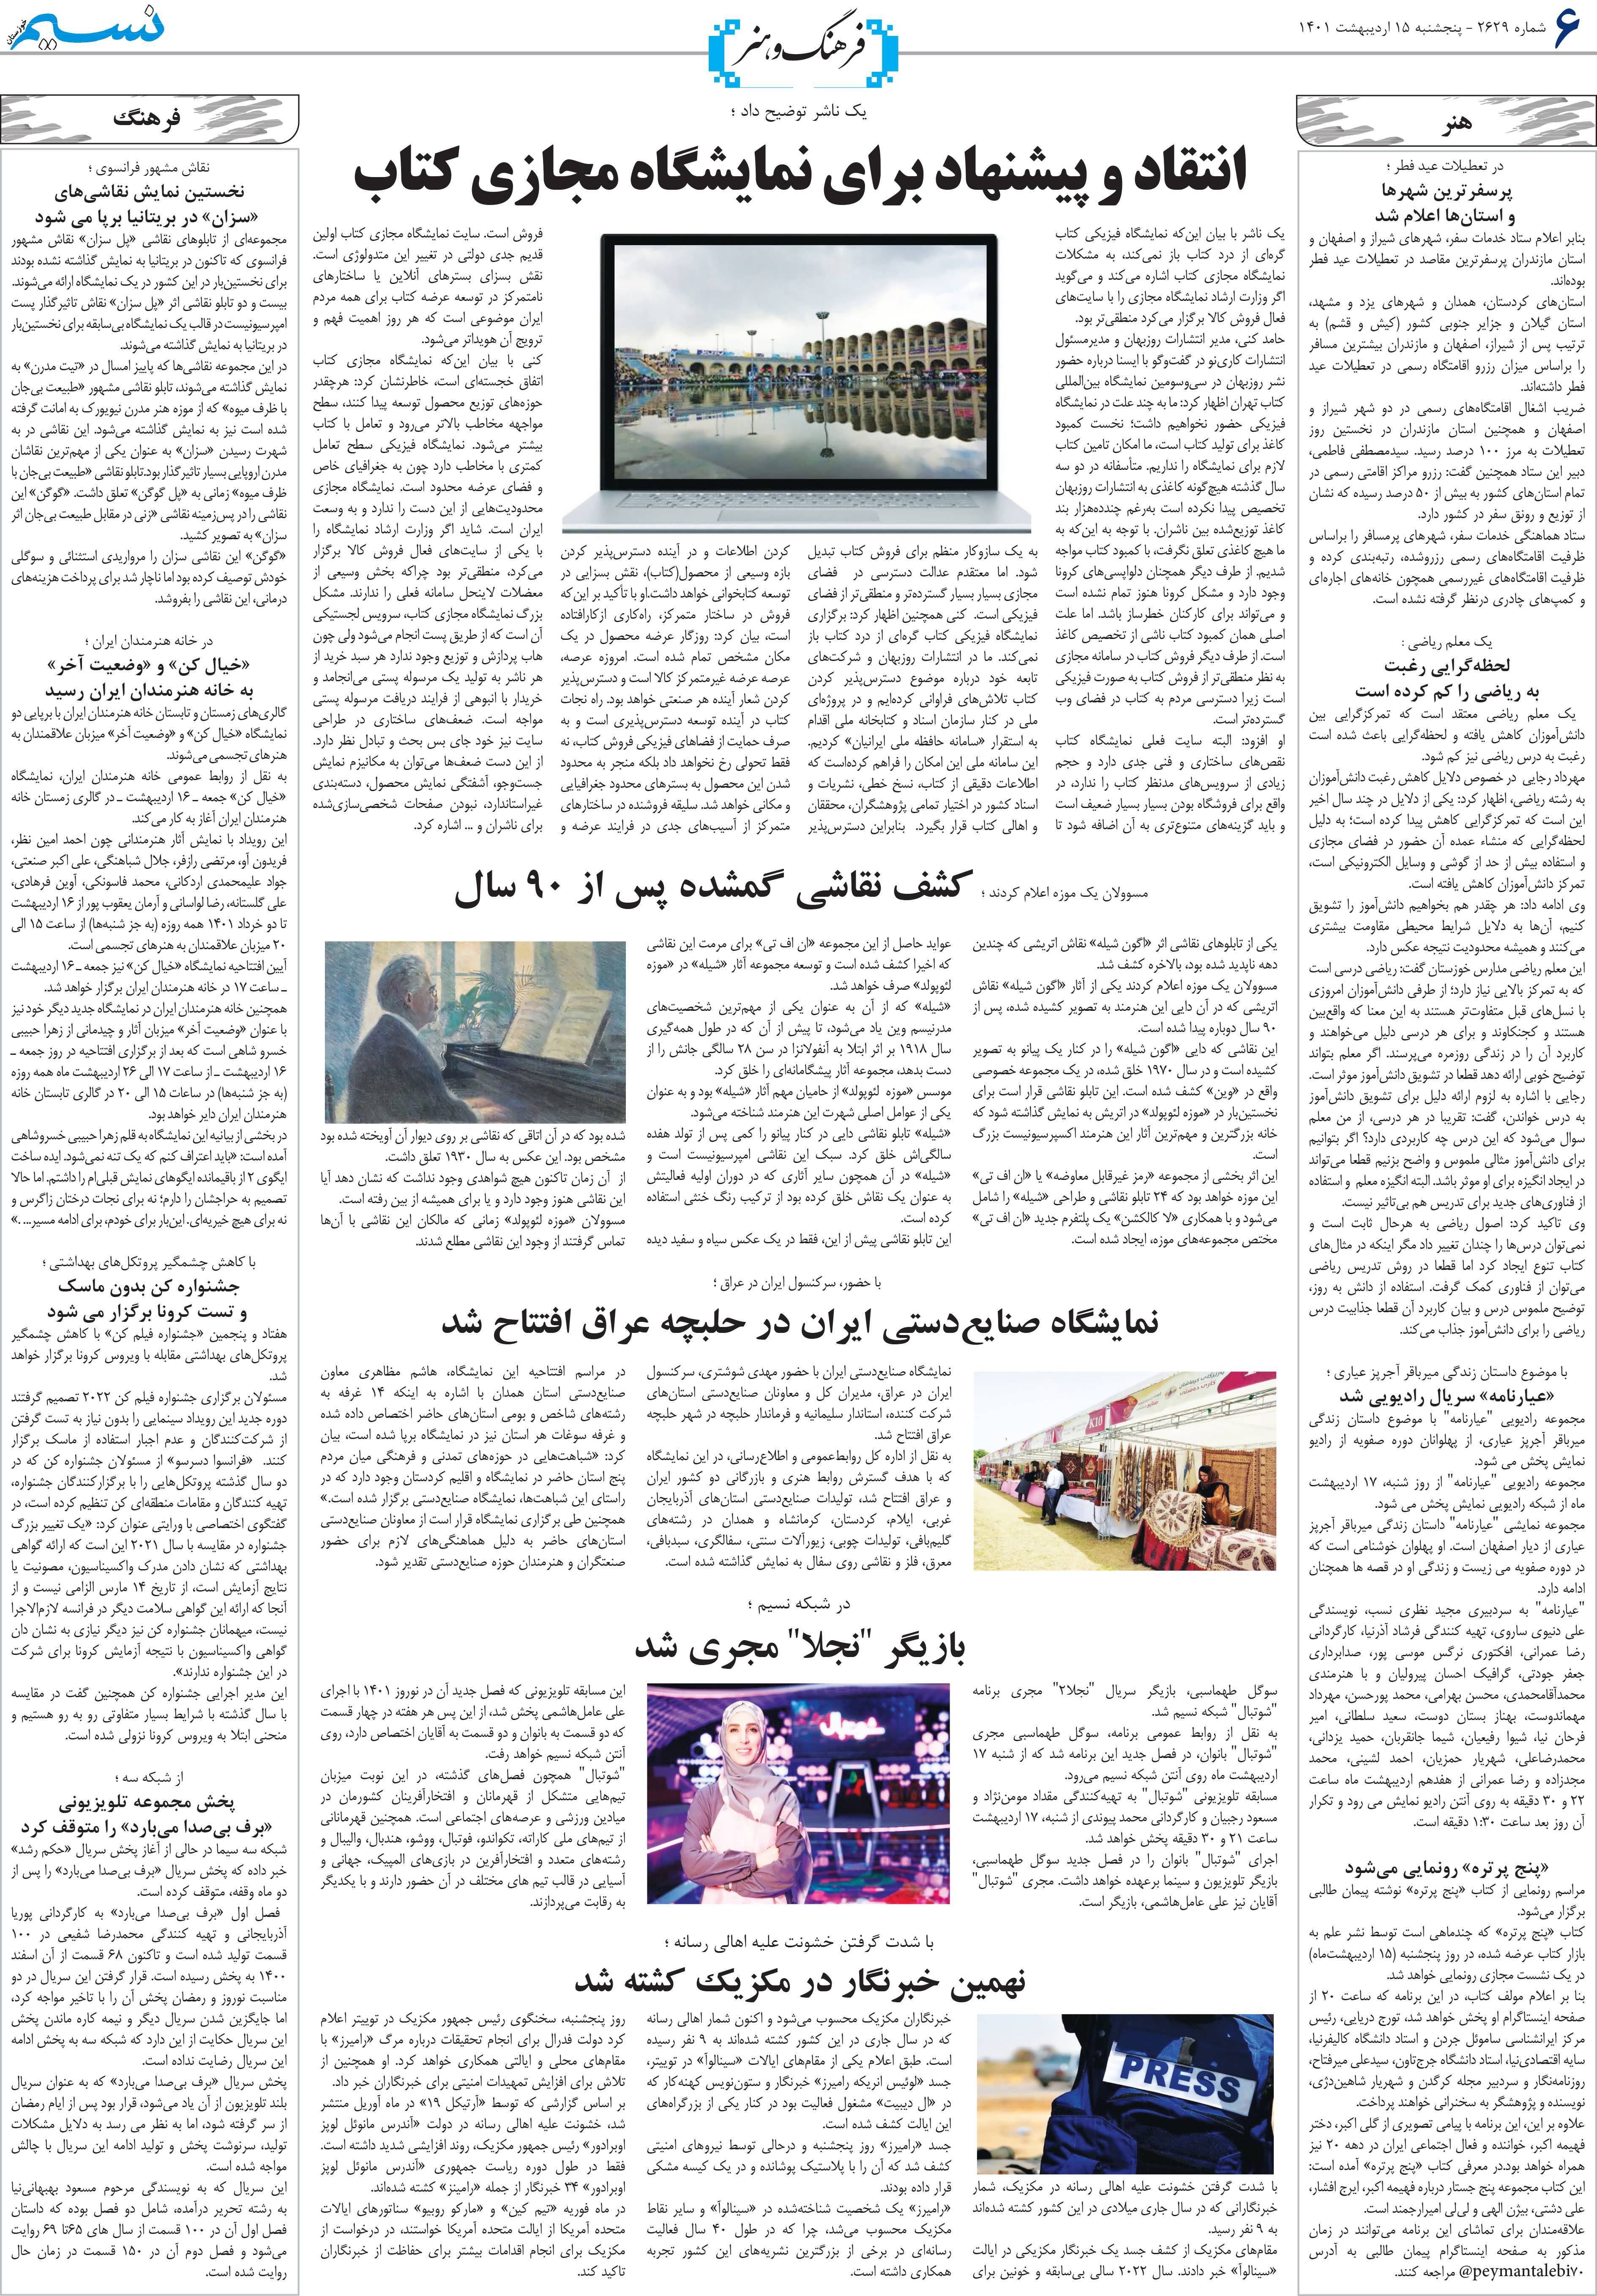 صفحه فرهنگ و هنر روزنامه نسیم شماره 2629